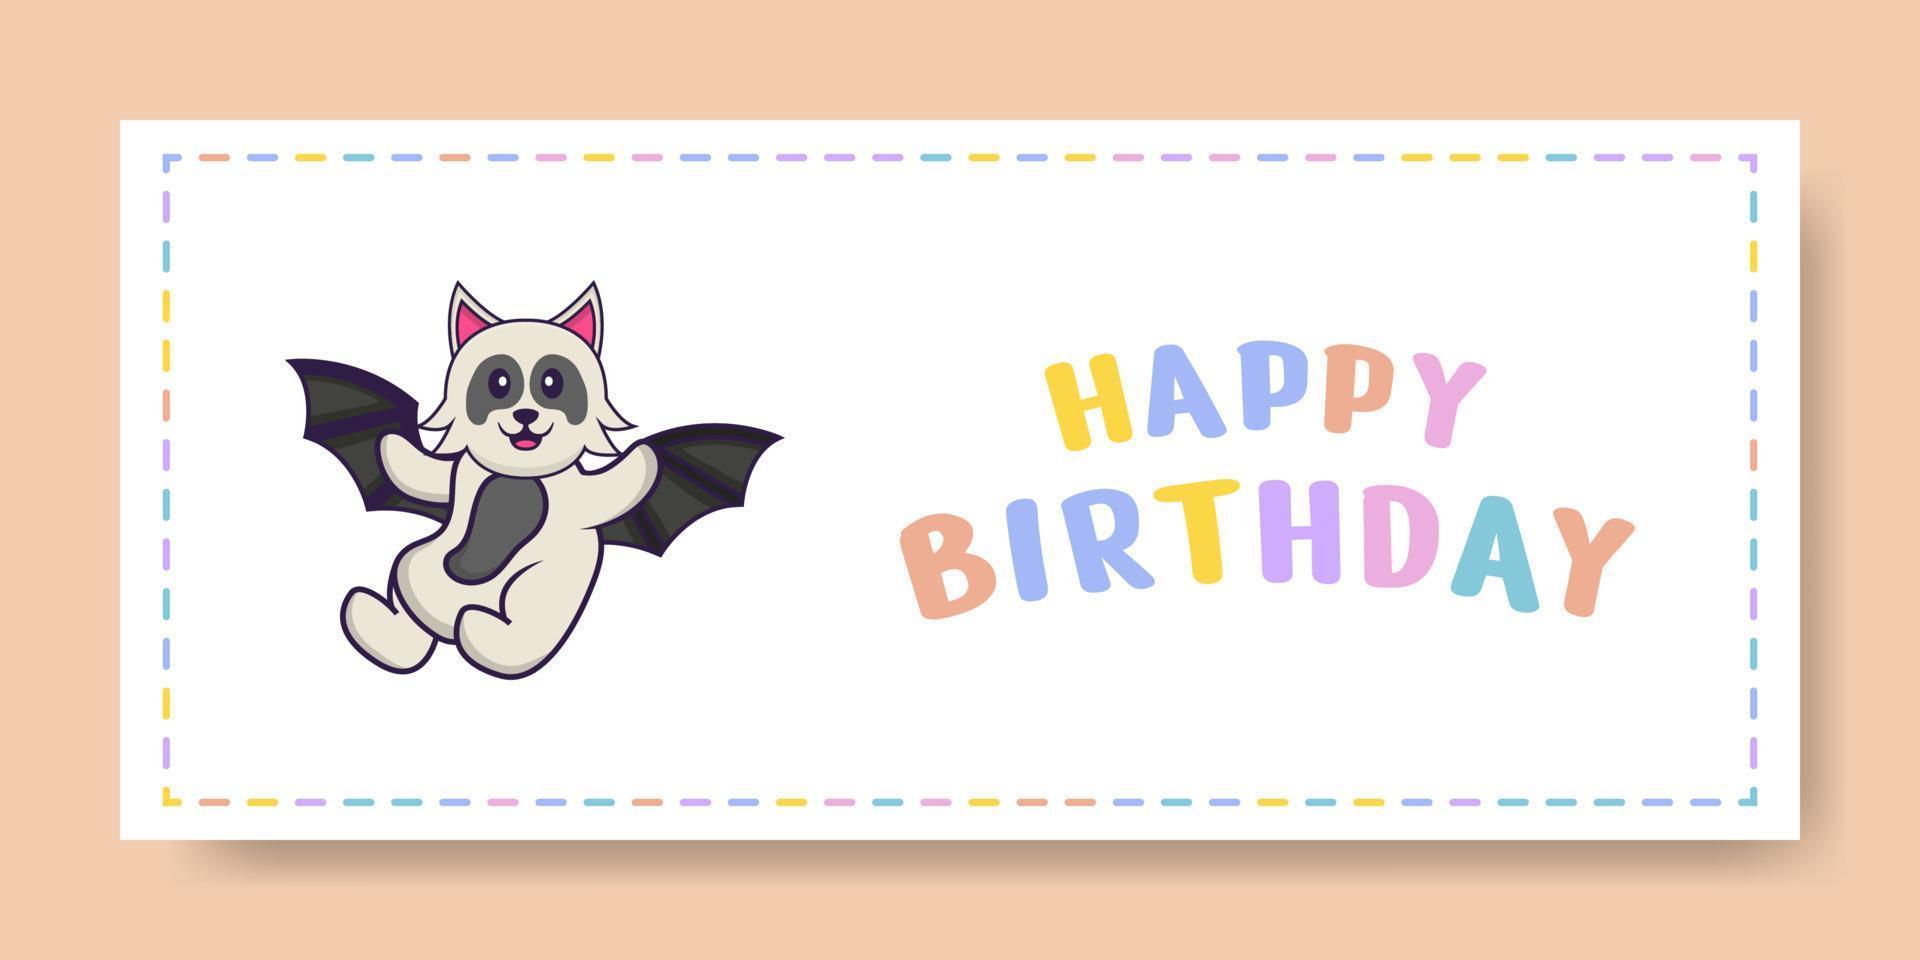 grattis på födelsedagen banner med söt hund seriefigur. vektor illustration